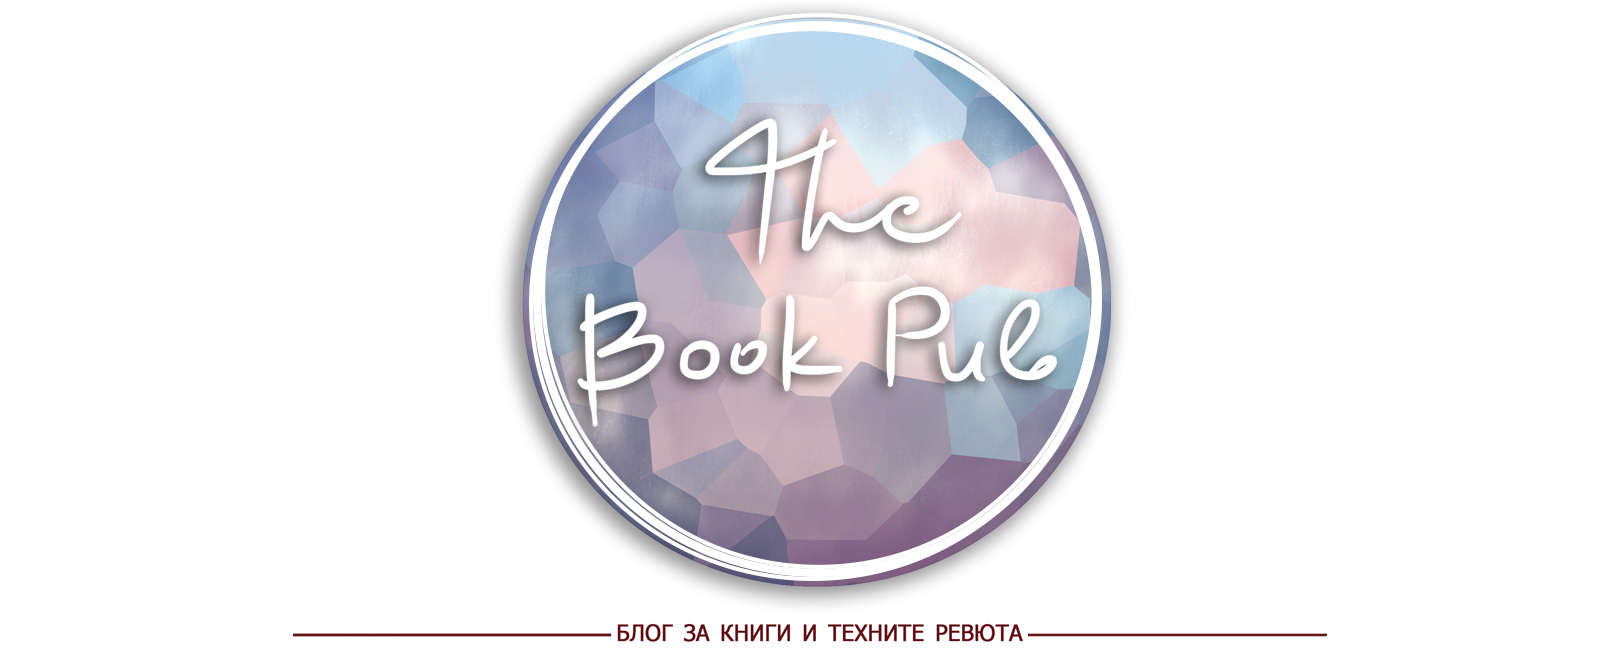 The Book Pub